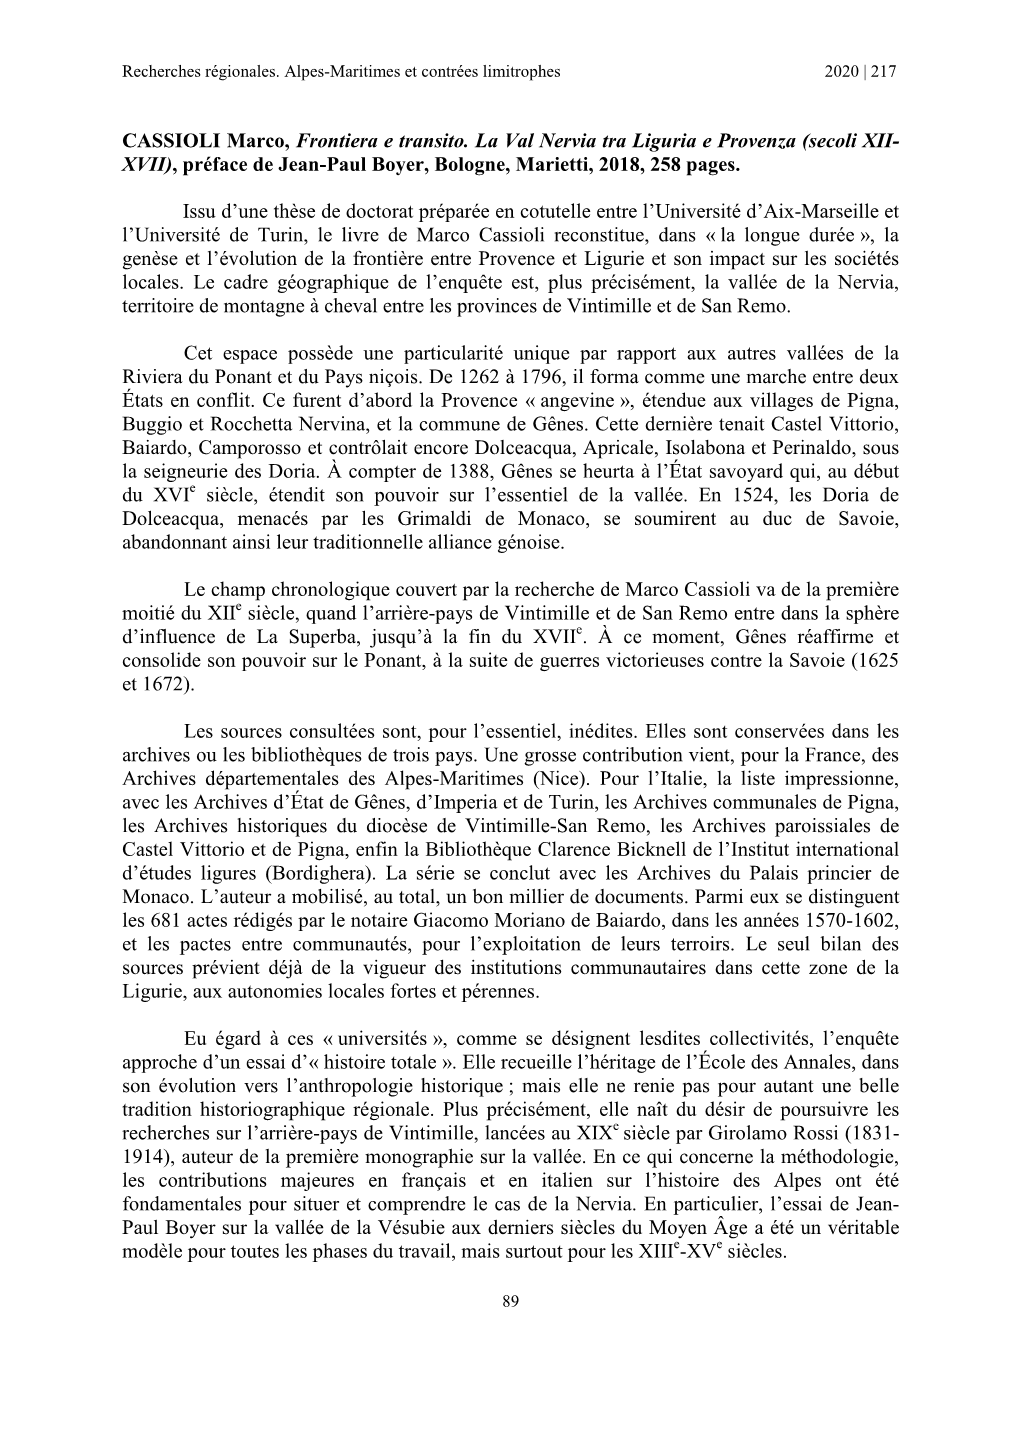 CASSIOLI Marco, Frontiera E Transito. La Val Nervia Tra Liguria E Provenza (Secoli XII- XVII), Préface De Jean-Paul Boyer, Bologne, Marietti, 2018, 258 Pages